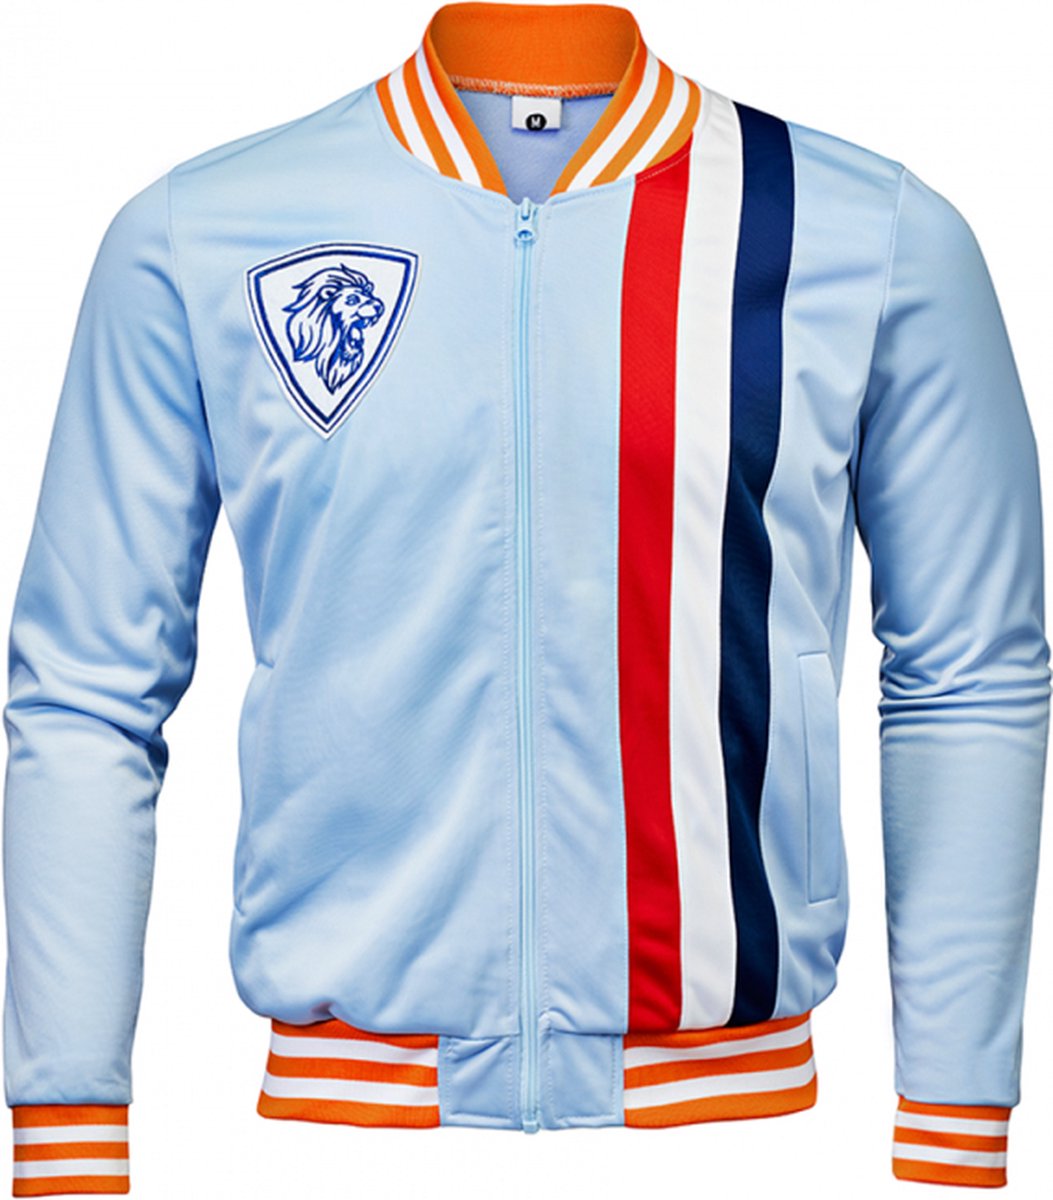 Trainings jas - Koningsdag kleding - Jack - Unisex Dames en Heren - Rood Wit Blauw Oranje - Maat L